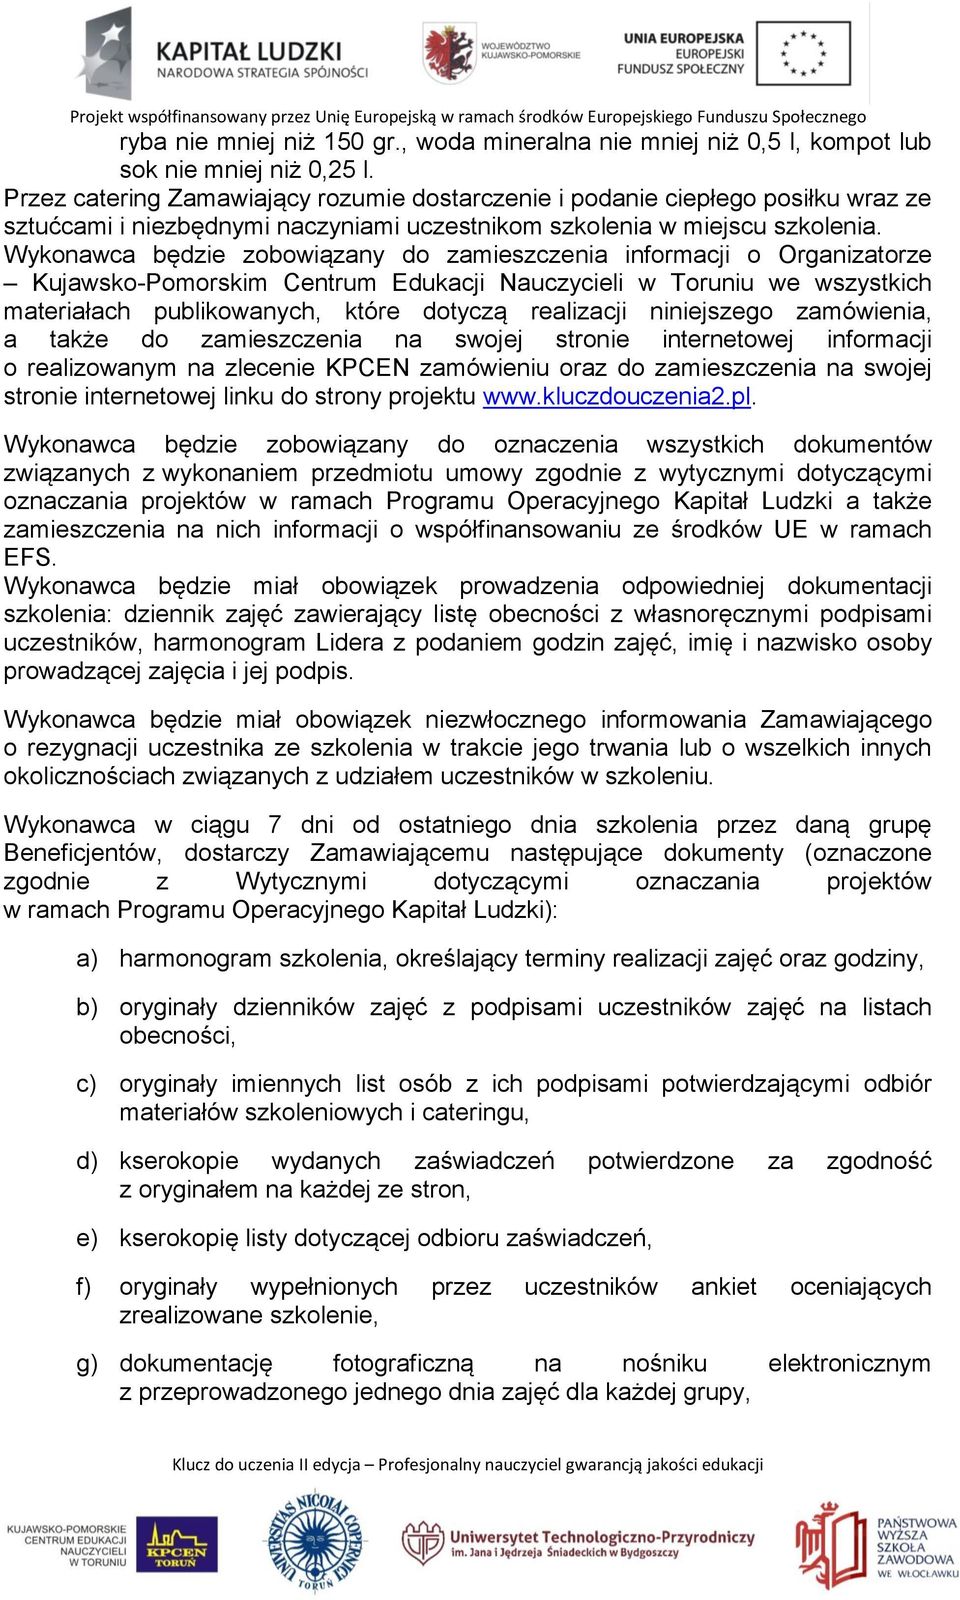 Wykonawca będzie zobowiązany do zamieszczenia informacji o Organizatorze Kujawsko-Pomorskim Centrum Edukacji Nauczycieli w Toruniu we wszystkich materiałach publikowanych, które dotyczą realizacji